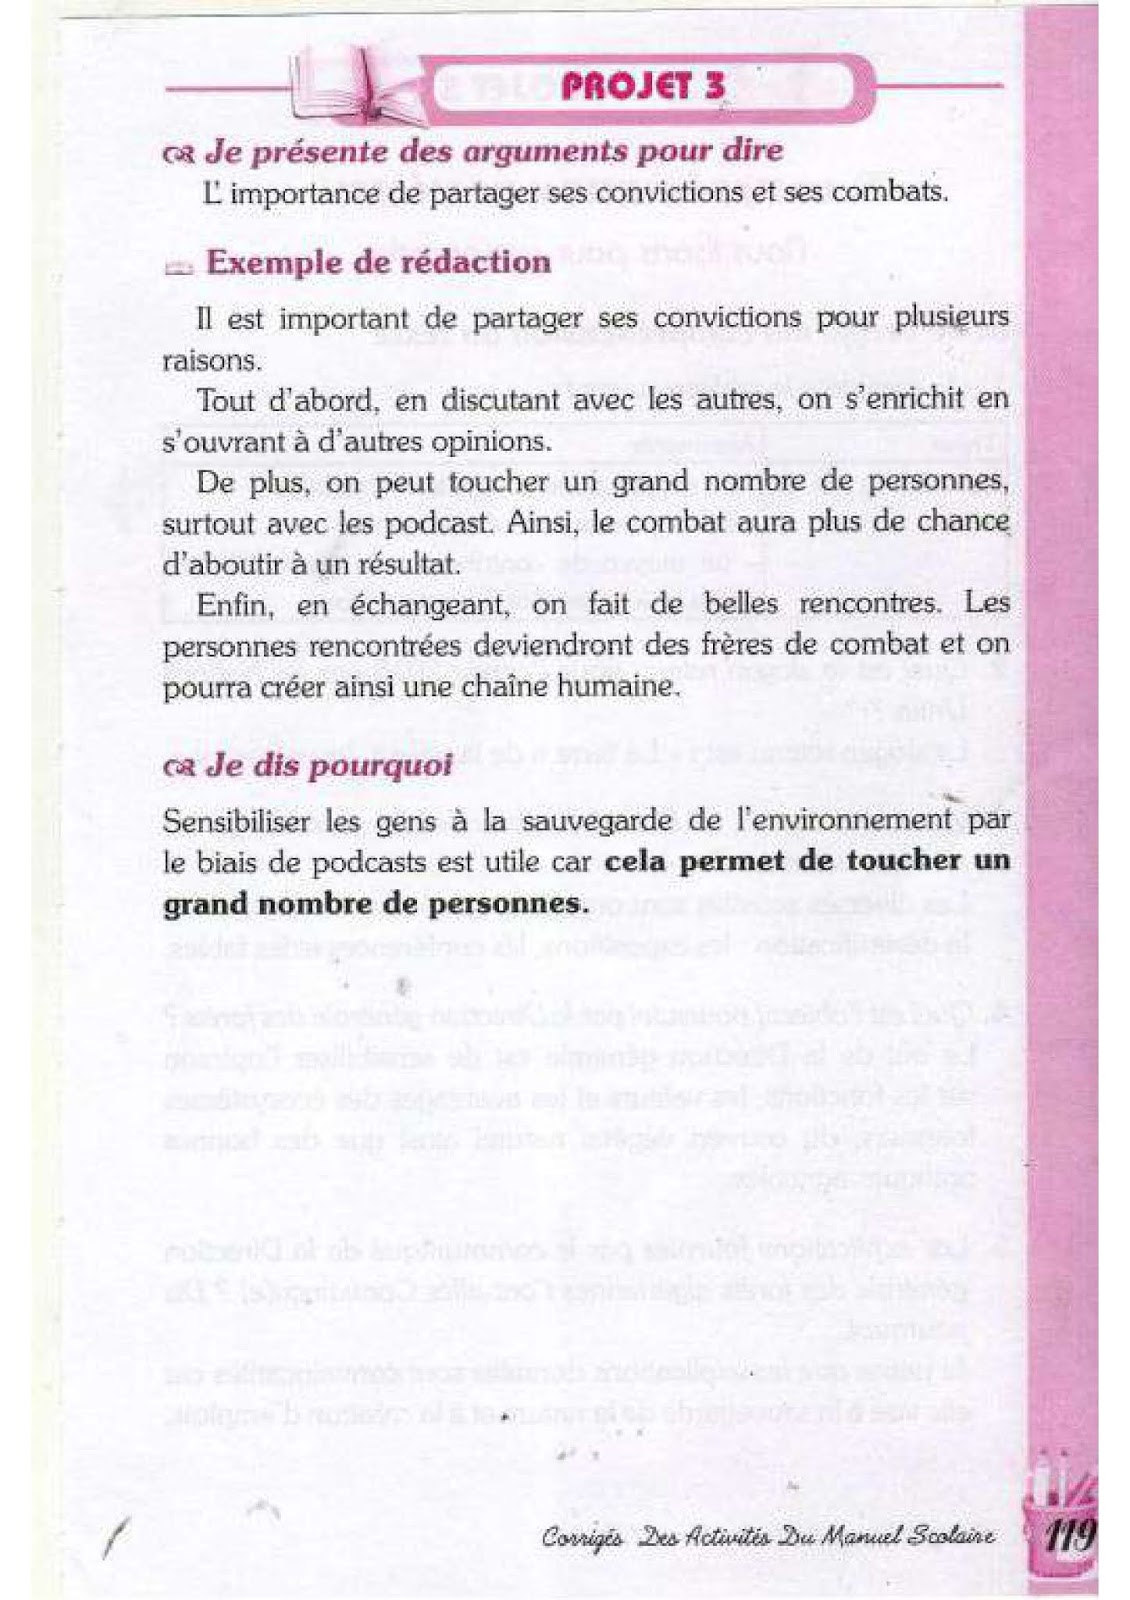 حل تمارين صفحة 107 الفرنسية للسنة الرابعة متوسط - الجيل الثاني